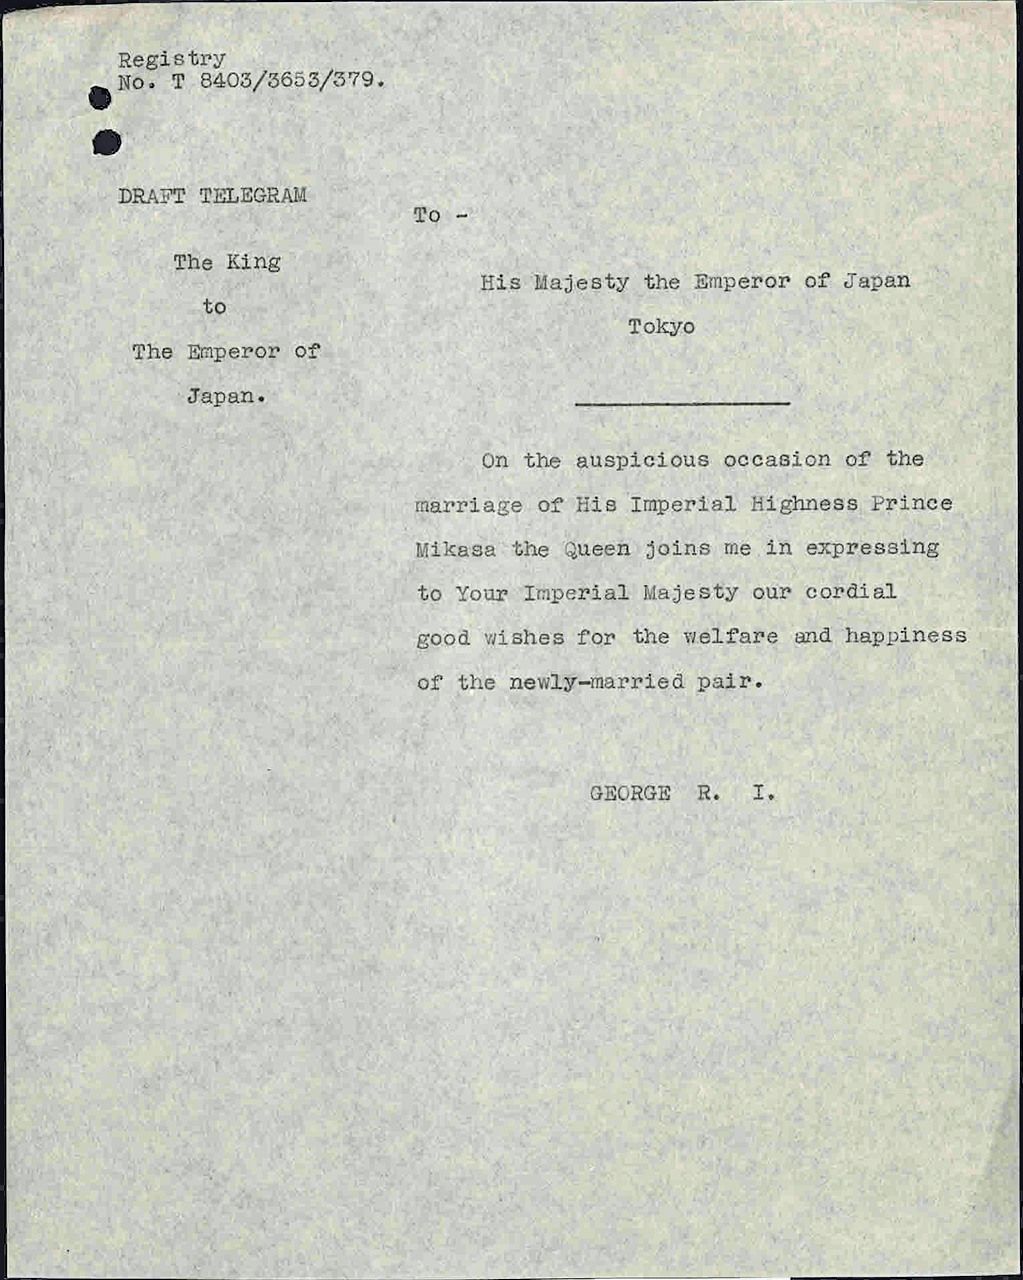 Предварительный текст (проект) поздравительной телеграммы короля Георга императору Хирохито по случаю бракосочетания принца Микасы. Телеграмма была отправлена 22 октября 1941 г., документ из Британского королевского архива (© Her Majesty Queen Elizabeth II, 2021)